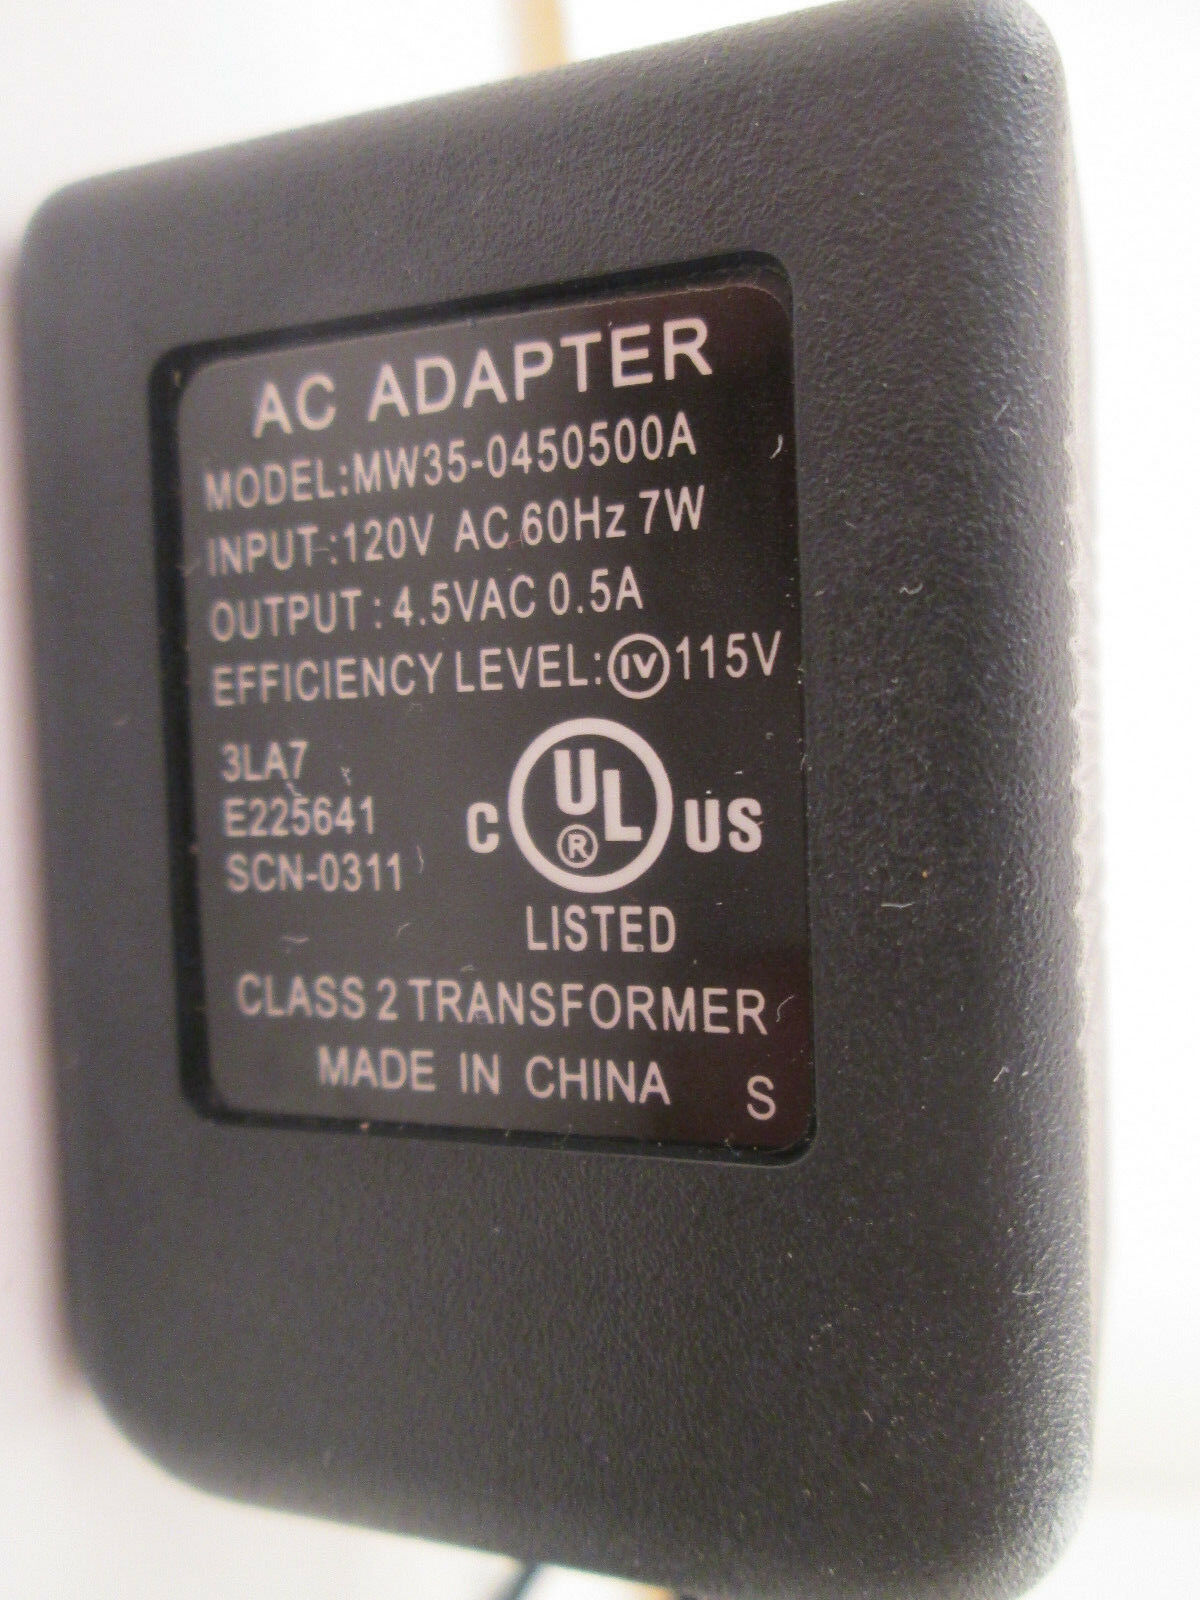 New 4.5V 0.5A MW35-0450500A Class 2 Transformer Ac Adapter - Click Image to Close